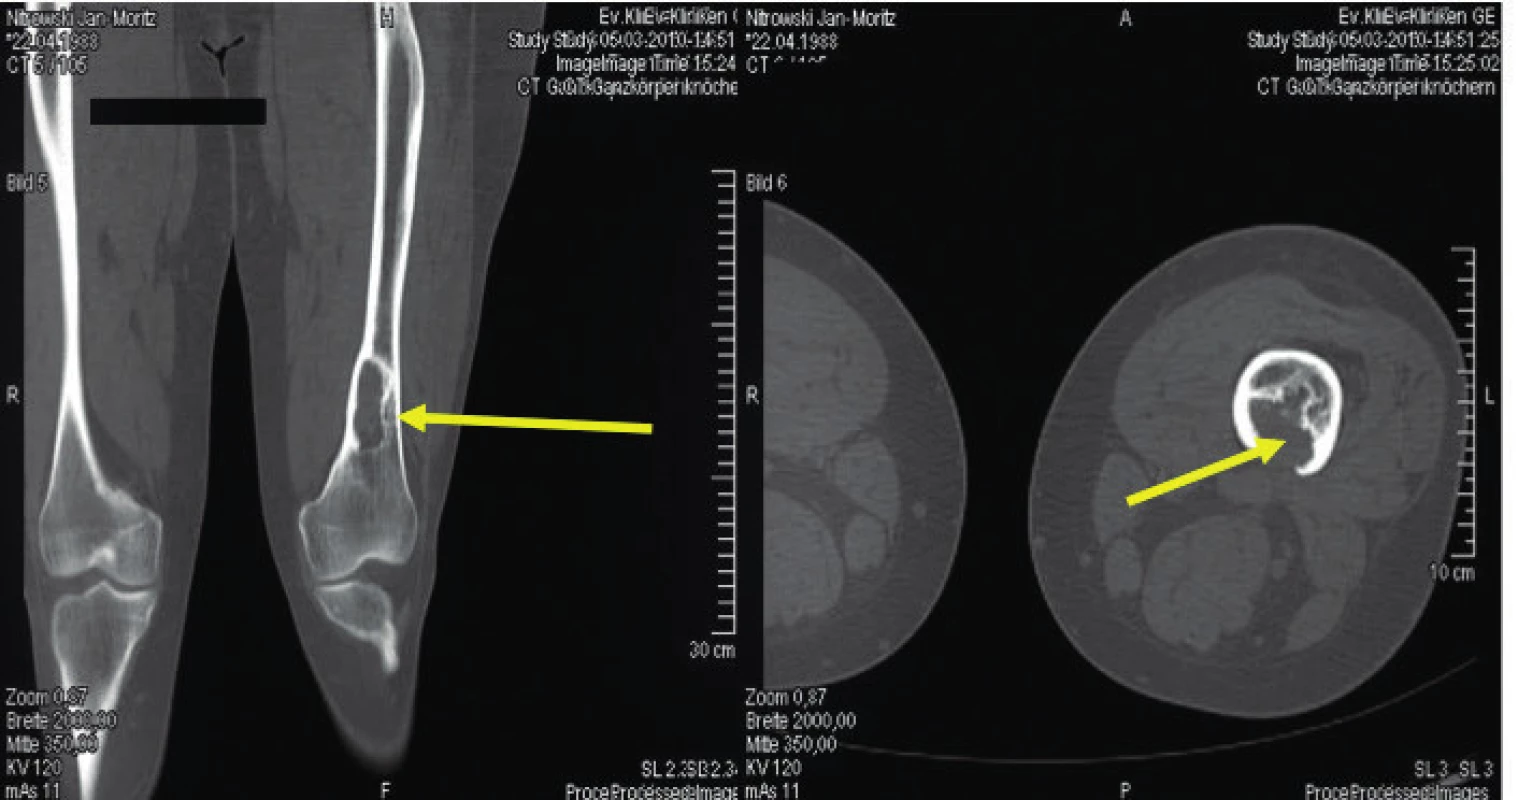 Osteolytické ložisko ve femoru narušující kortikalis<br>
Snímek zapůjčil pro tuto publikaci prof. Claus Doberaurer
z Gelsenkirchenu, Německo.